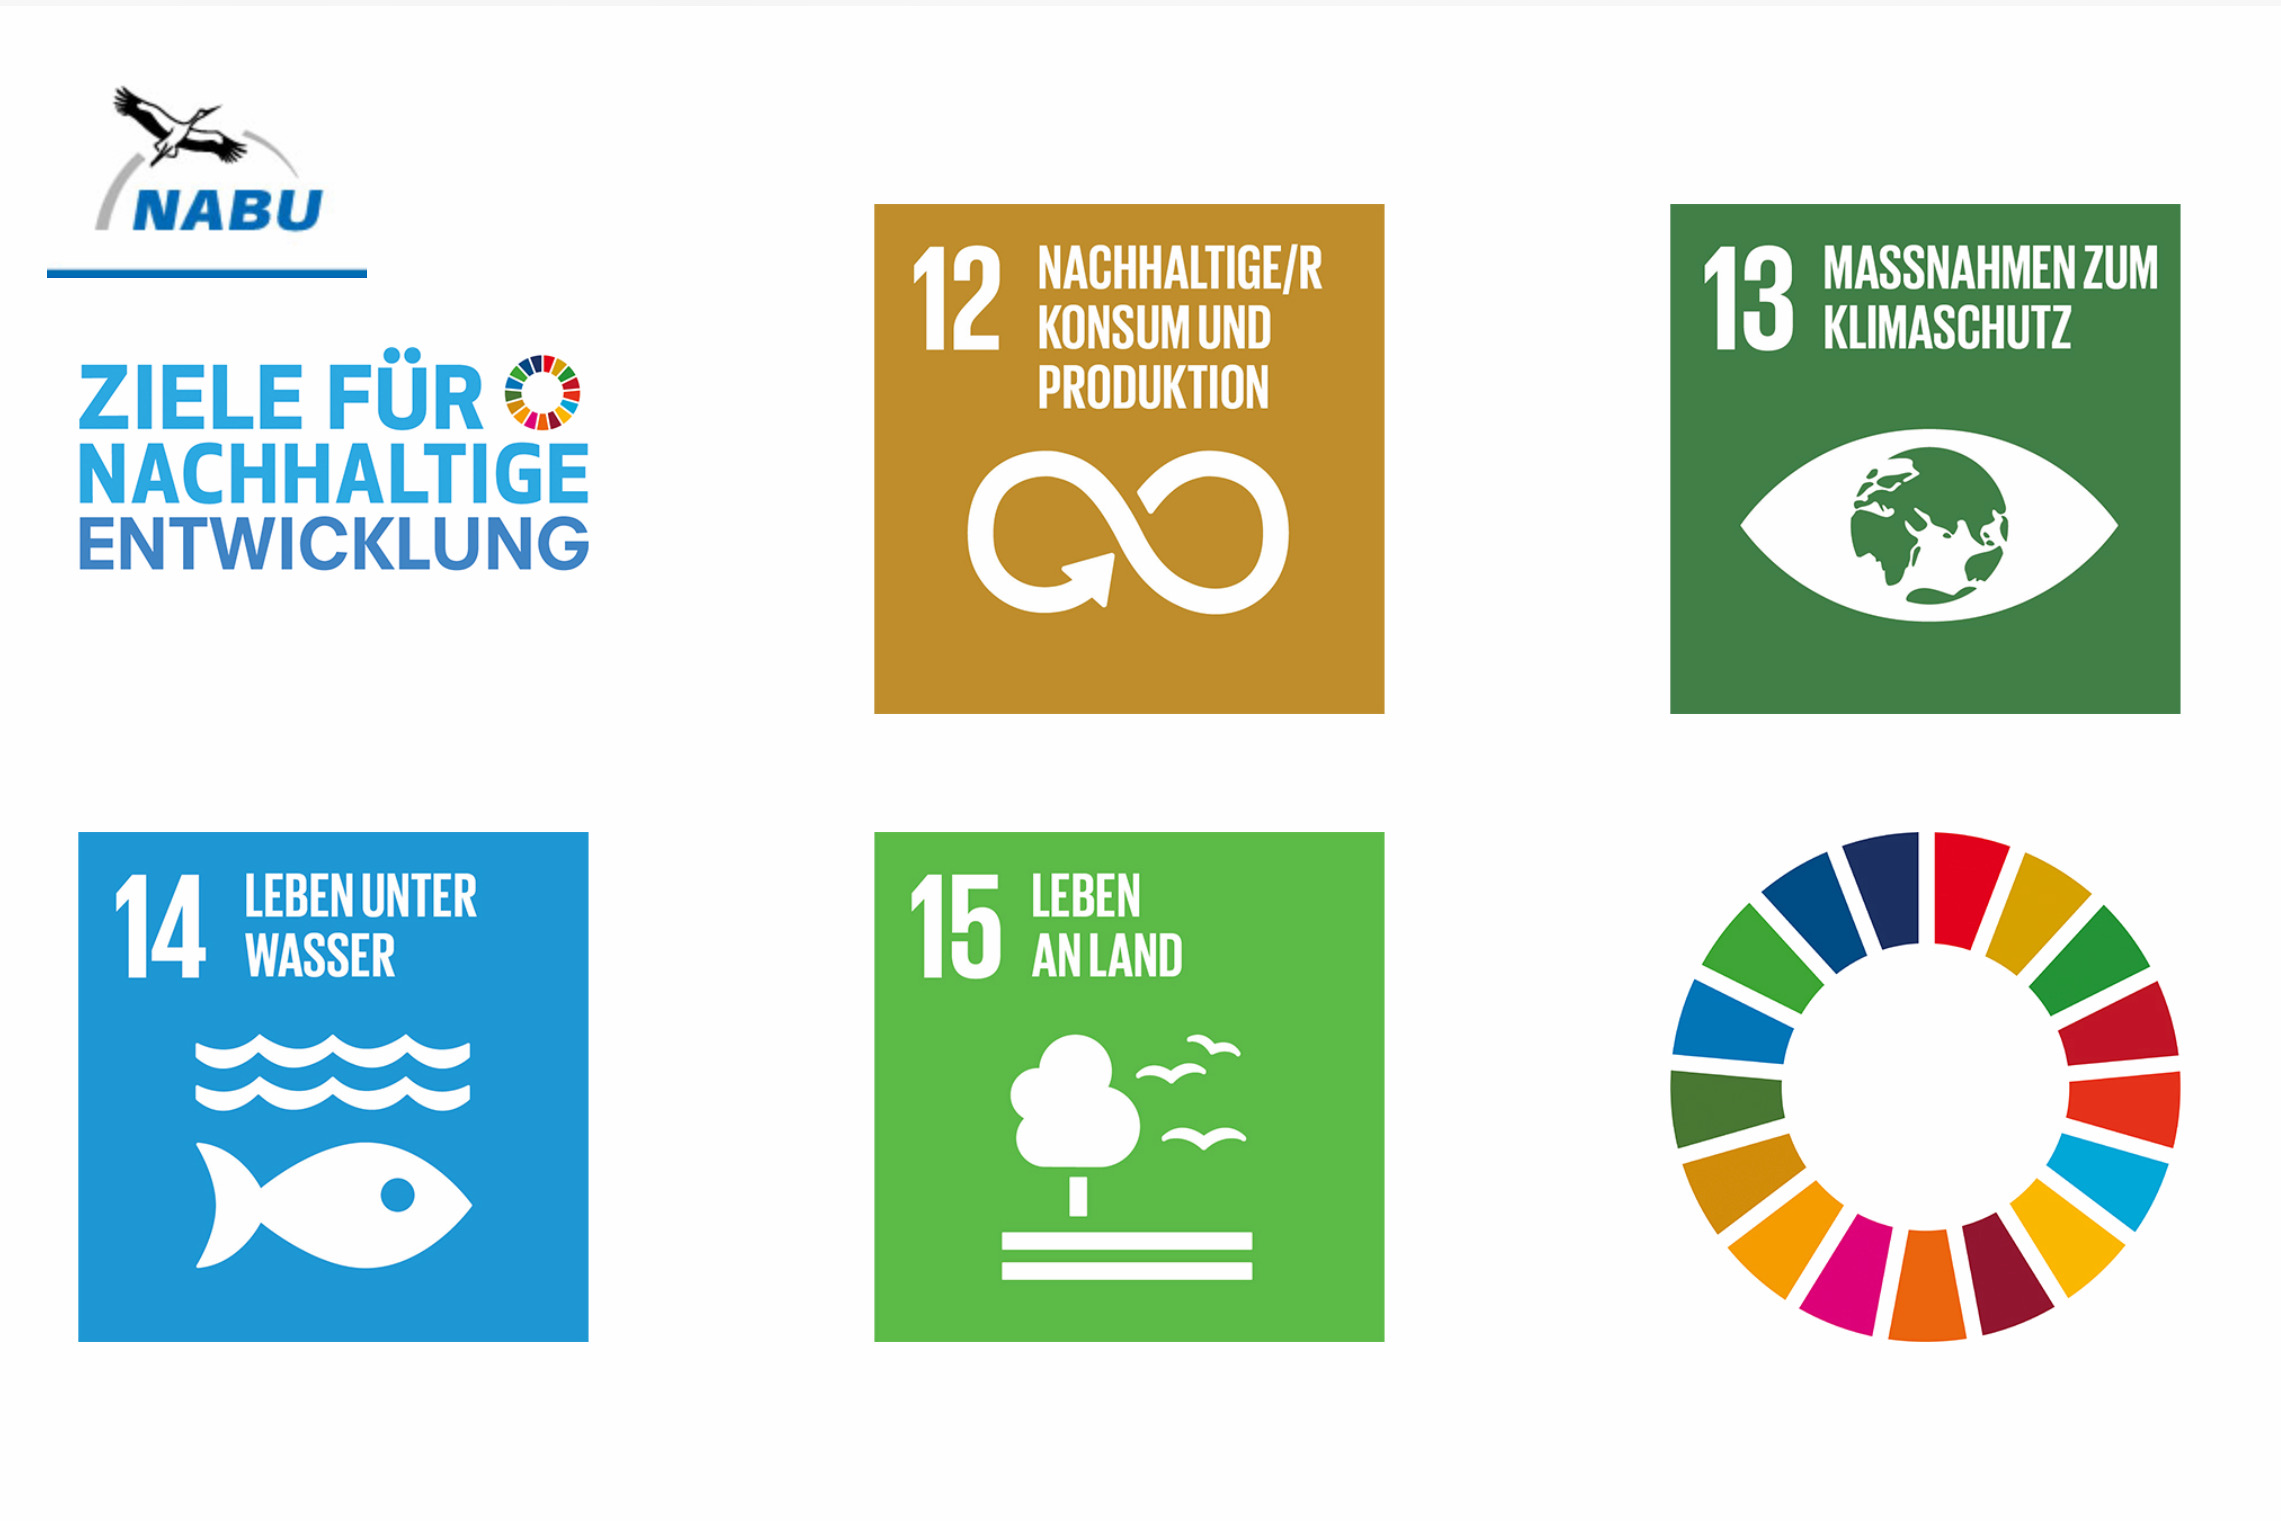 Das Bild zeigt vier von den 17 Zielen: Ziele 12 nachhaltiger Konsum, 13 Klimaschutz, 14 Leben unter Wasser und 15 Leben an Land